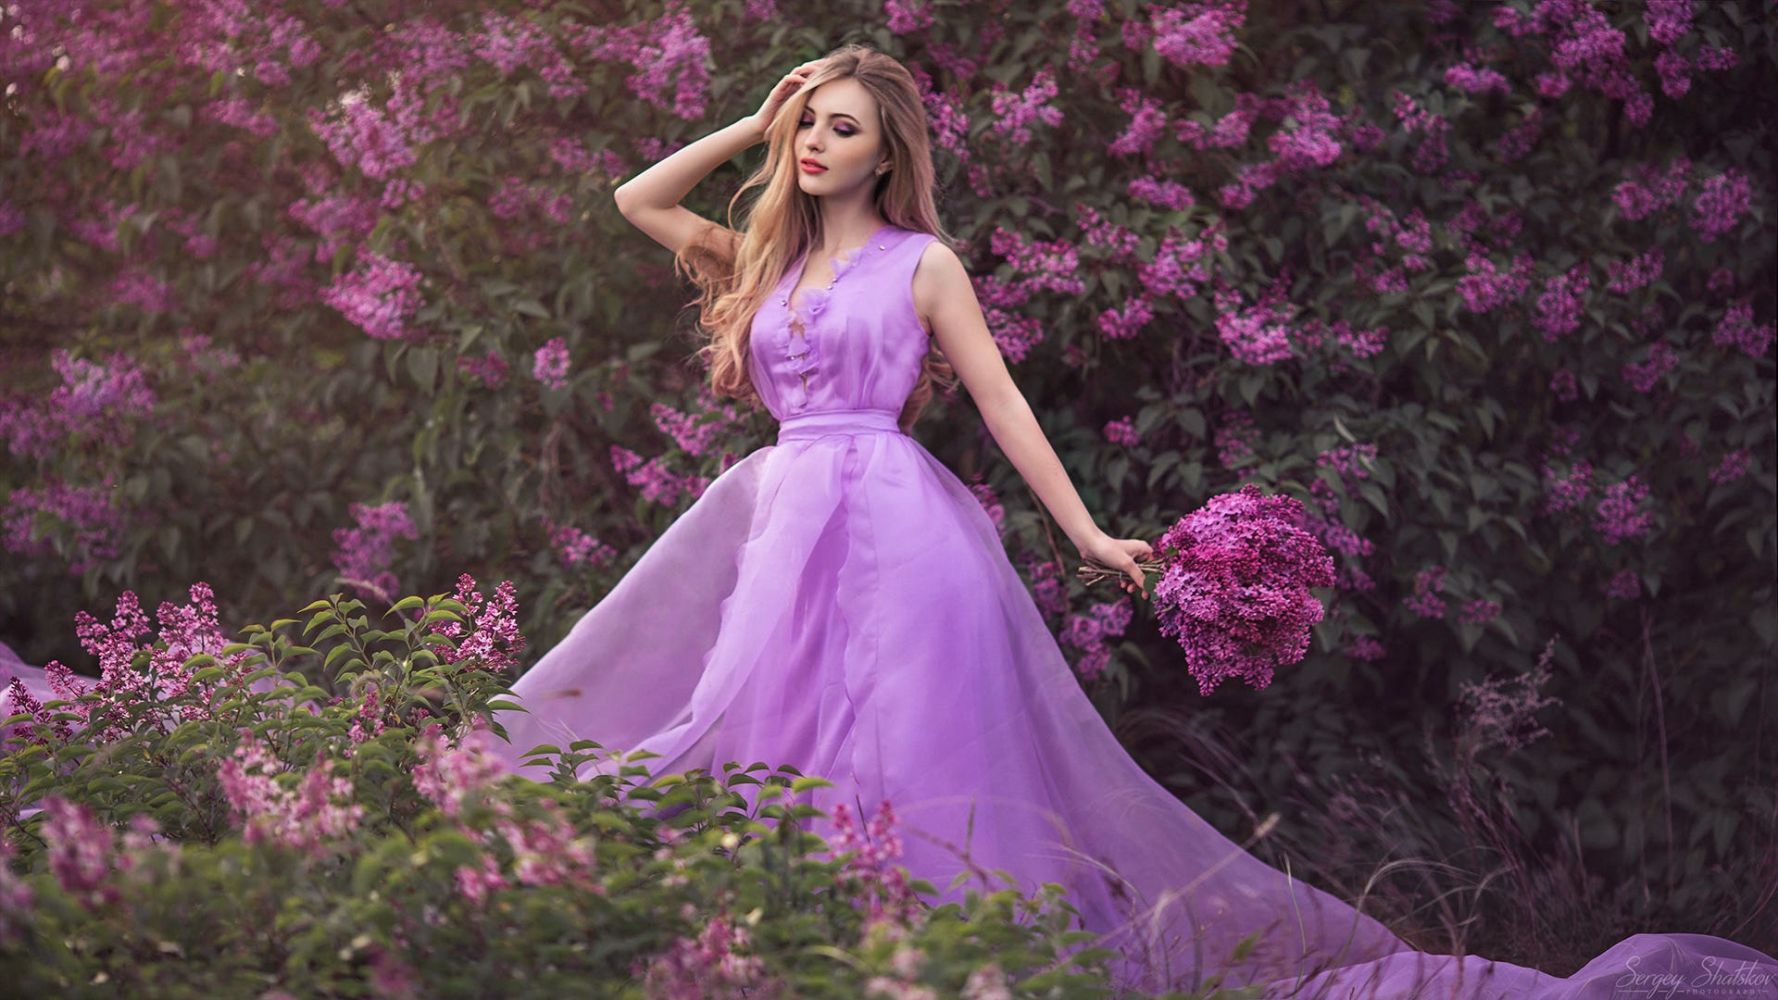 Фото скромной девушки ласкающей себя на фиолетовом фоне